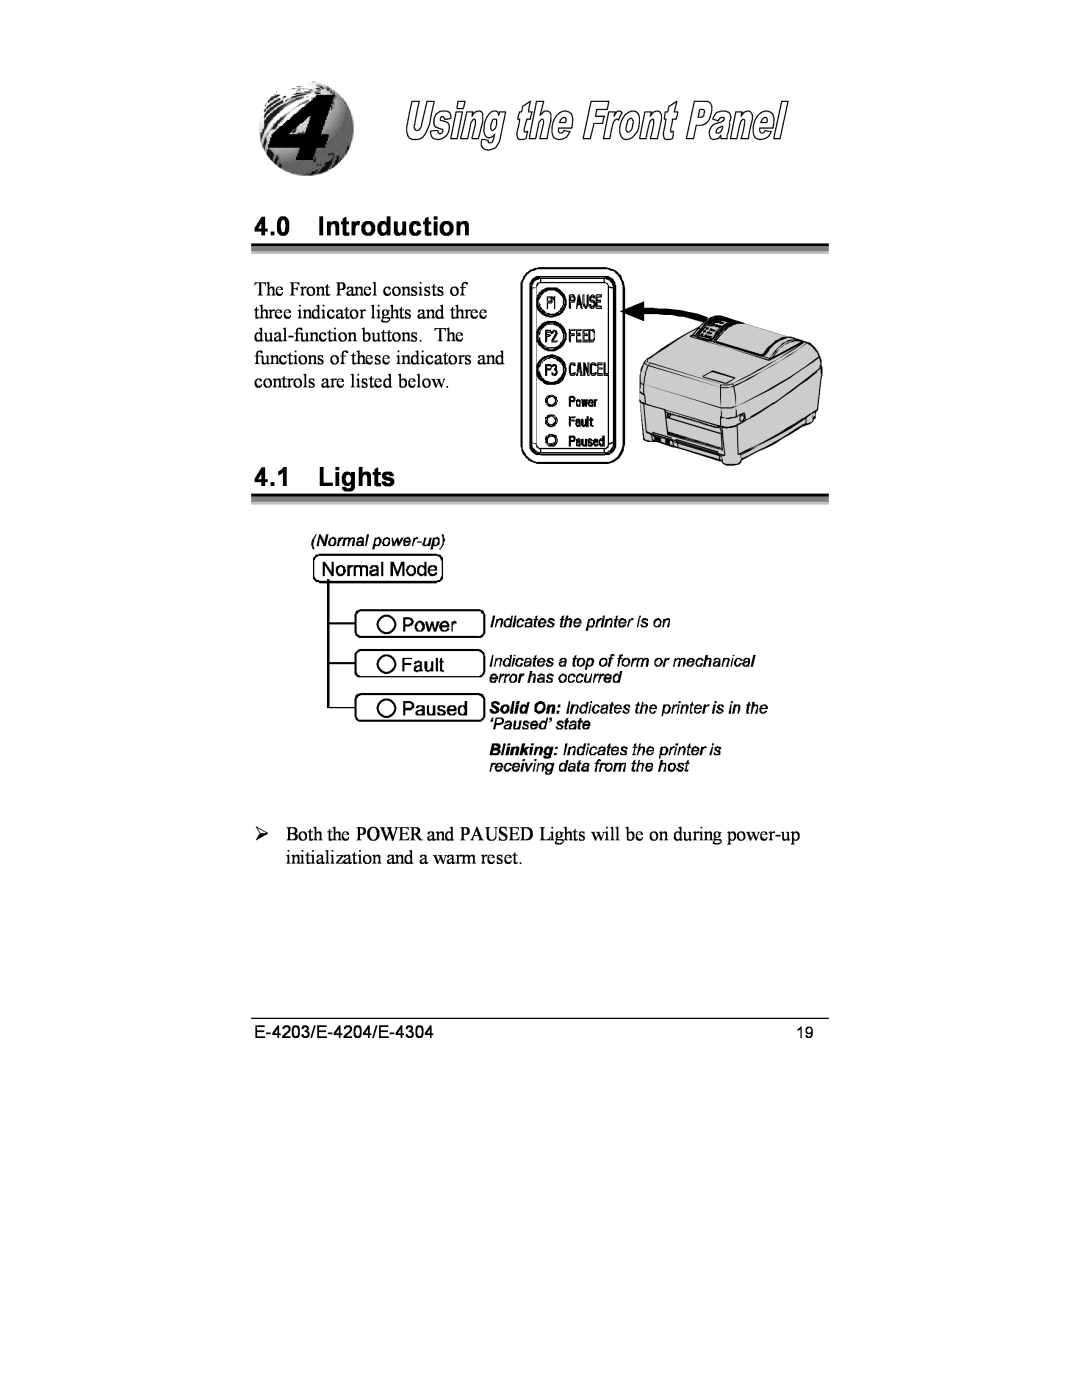 Datamax E-4304e manual Introduction, Lights, E-4203/E-4204/E-4304 